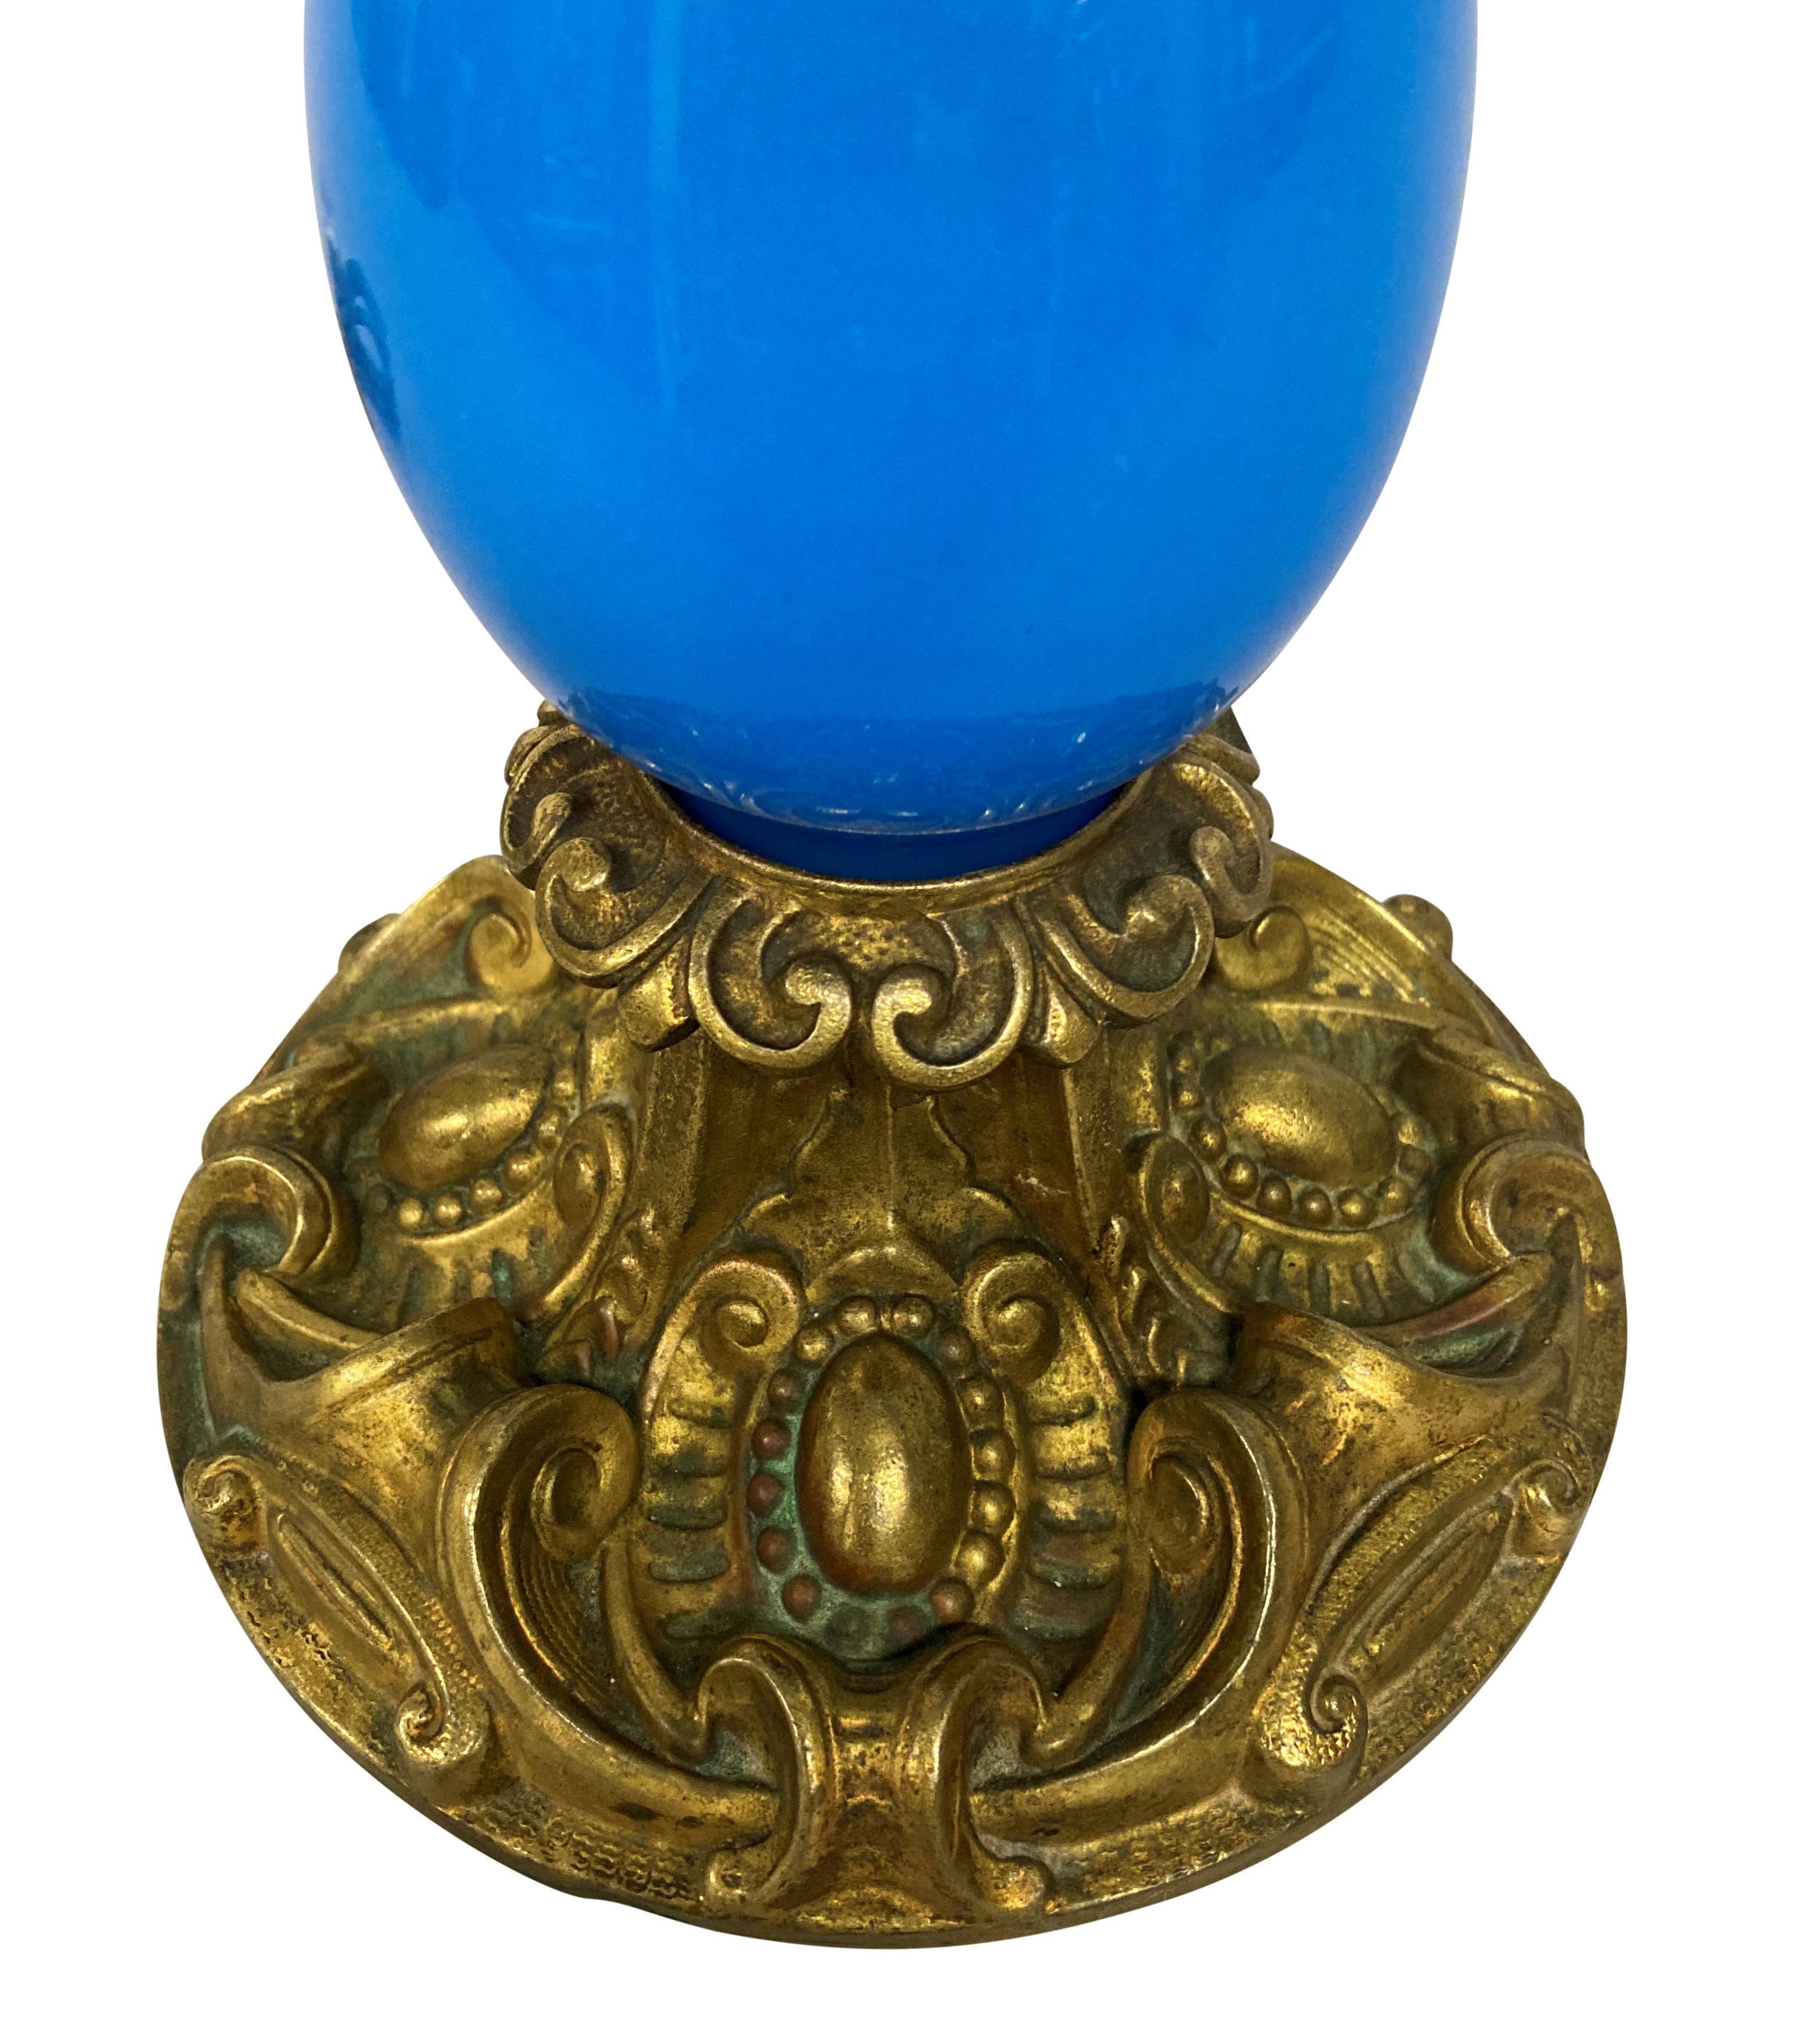 Lampe de table française de la fin du XIXe siècle en verre bleu, avec des montures décoratives en métal doré. Anciennement pour le pétrole.